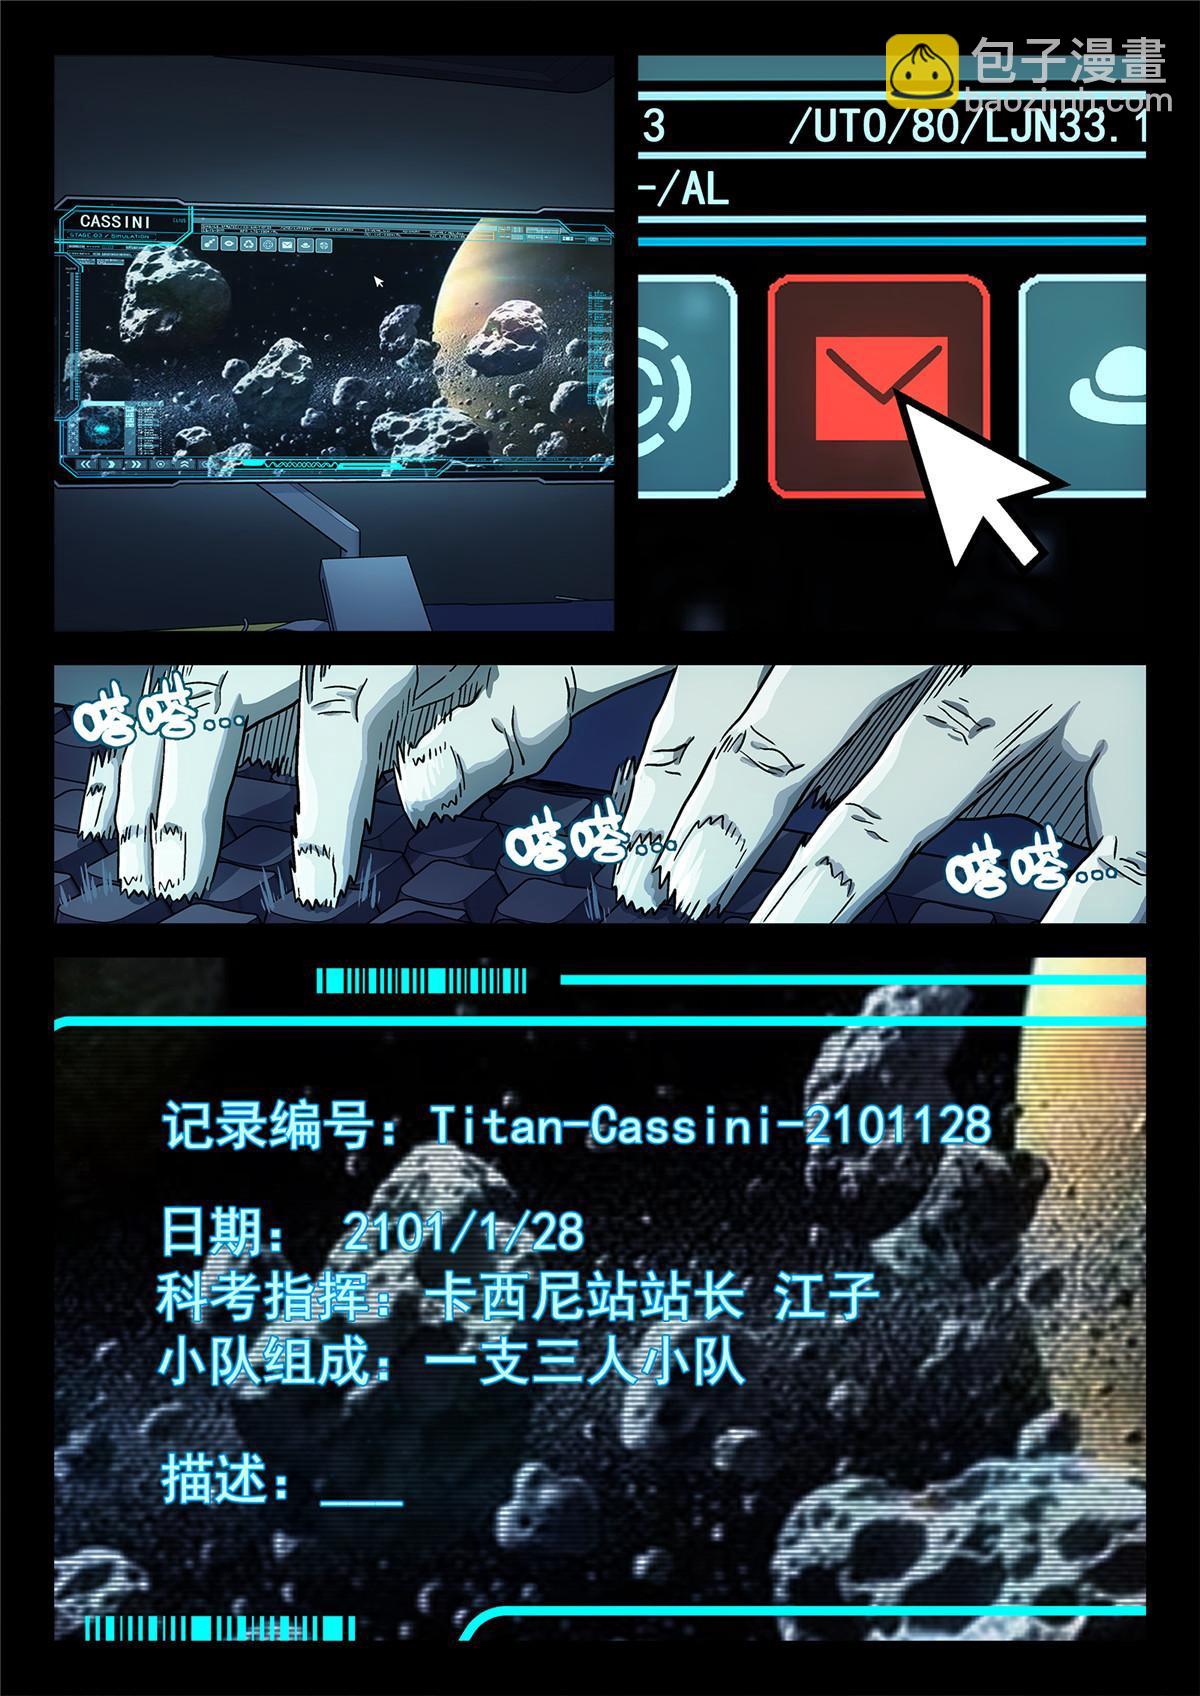 泰坦无人声 - 01 卡西尼站 - 2